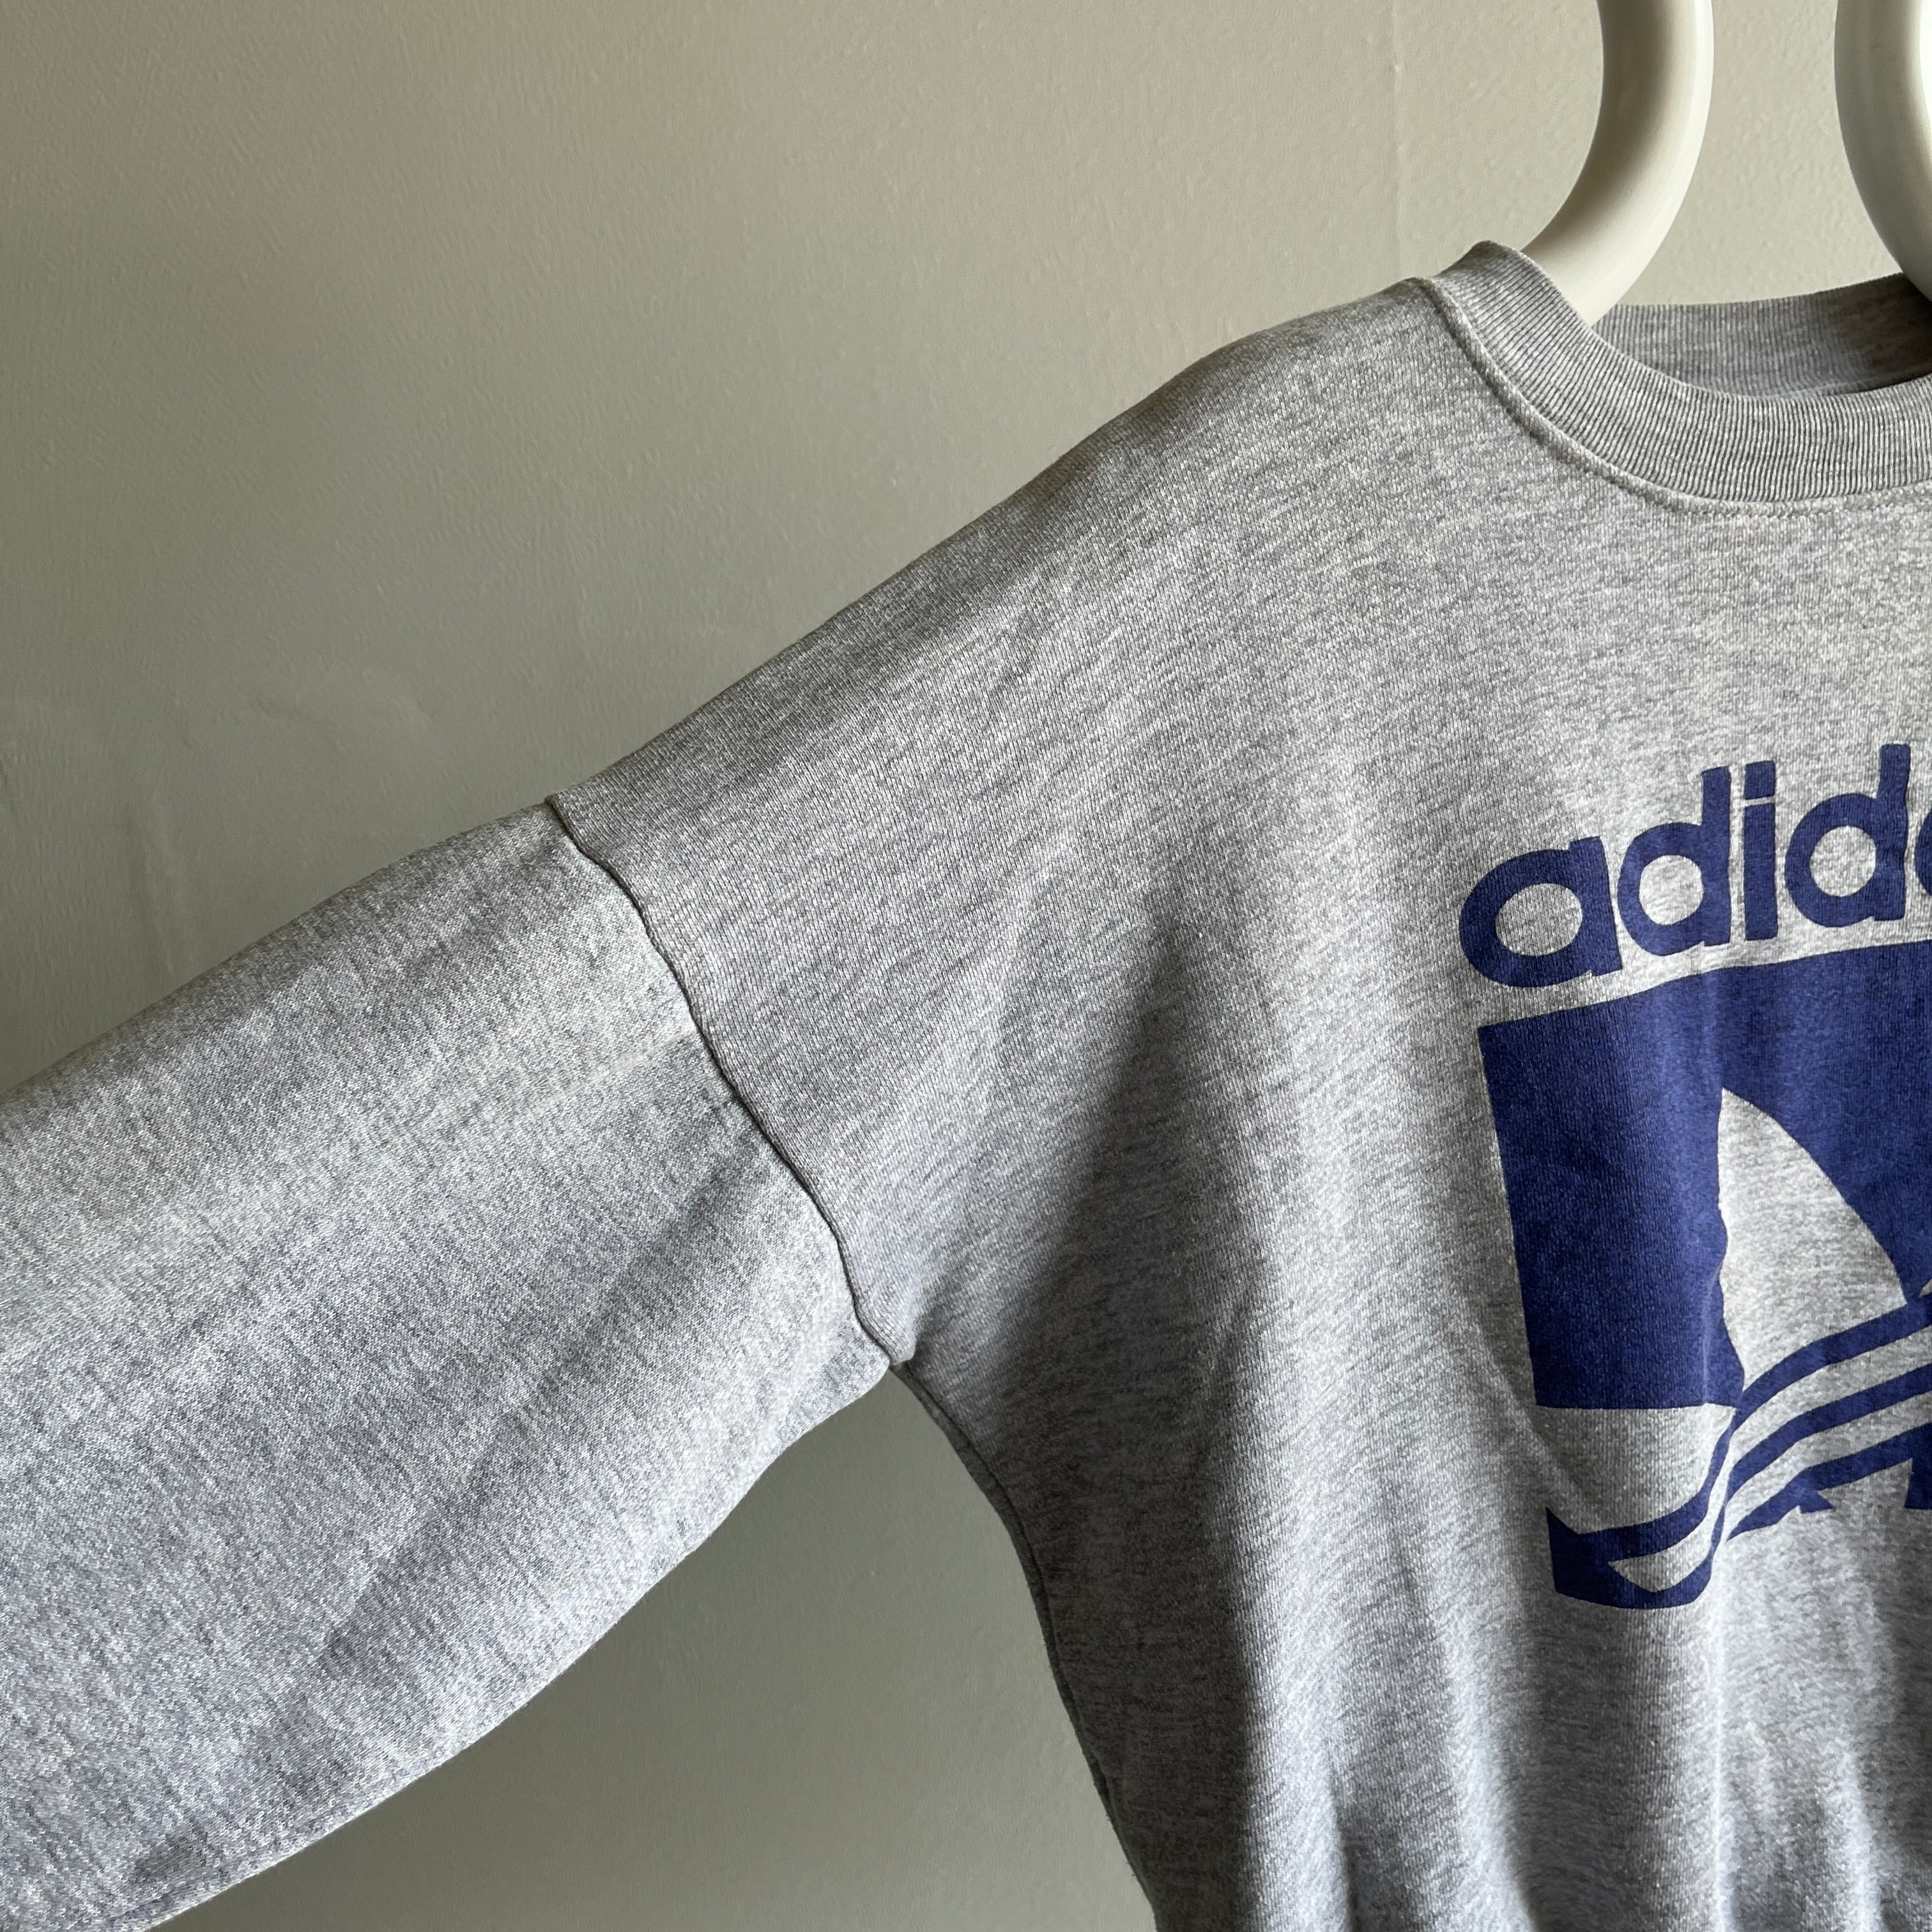 1980s Made in Canada ADIDAS Sweatshirt